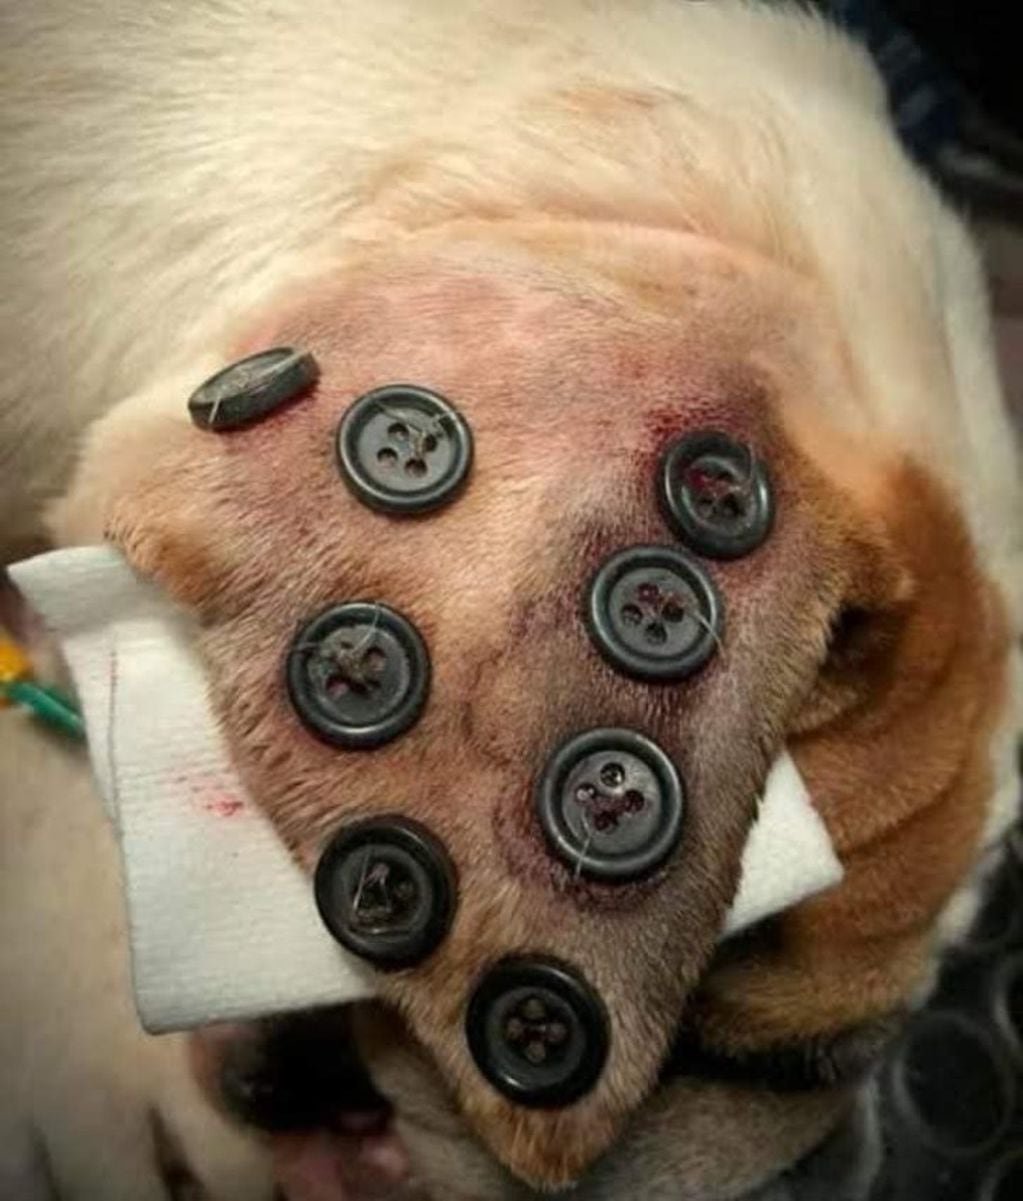 Veterinarios revelaron que los perros con "botones" en las orejas no sufren maltrato